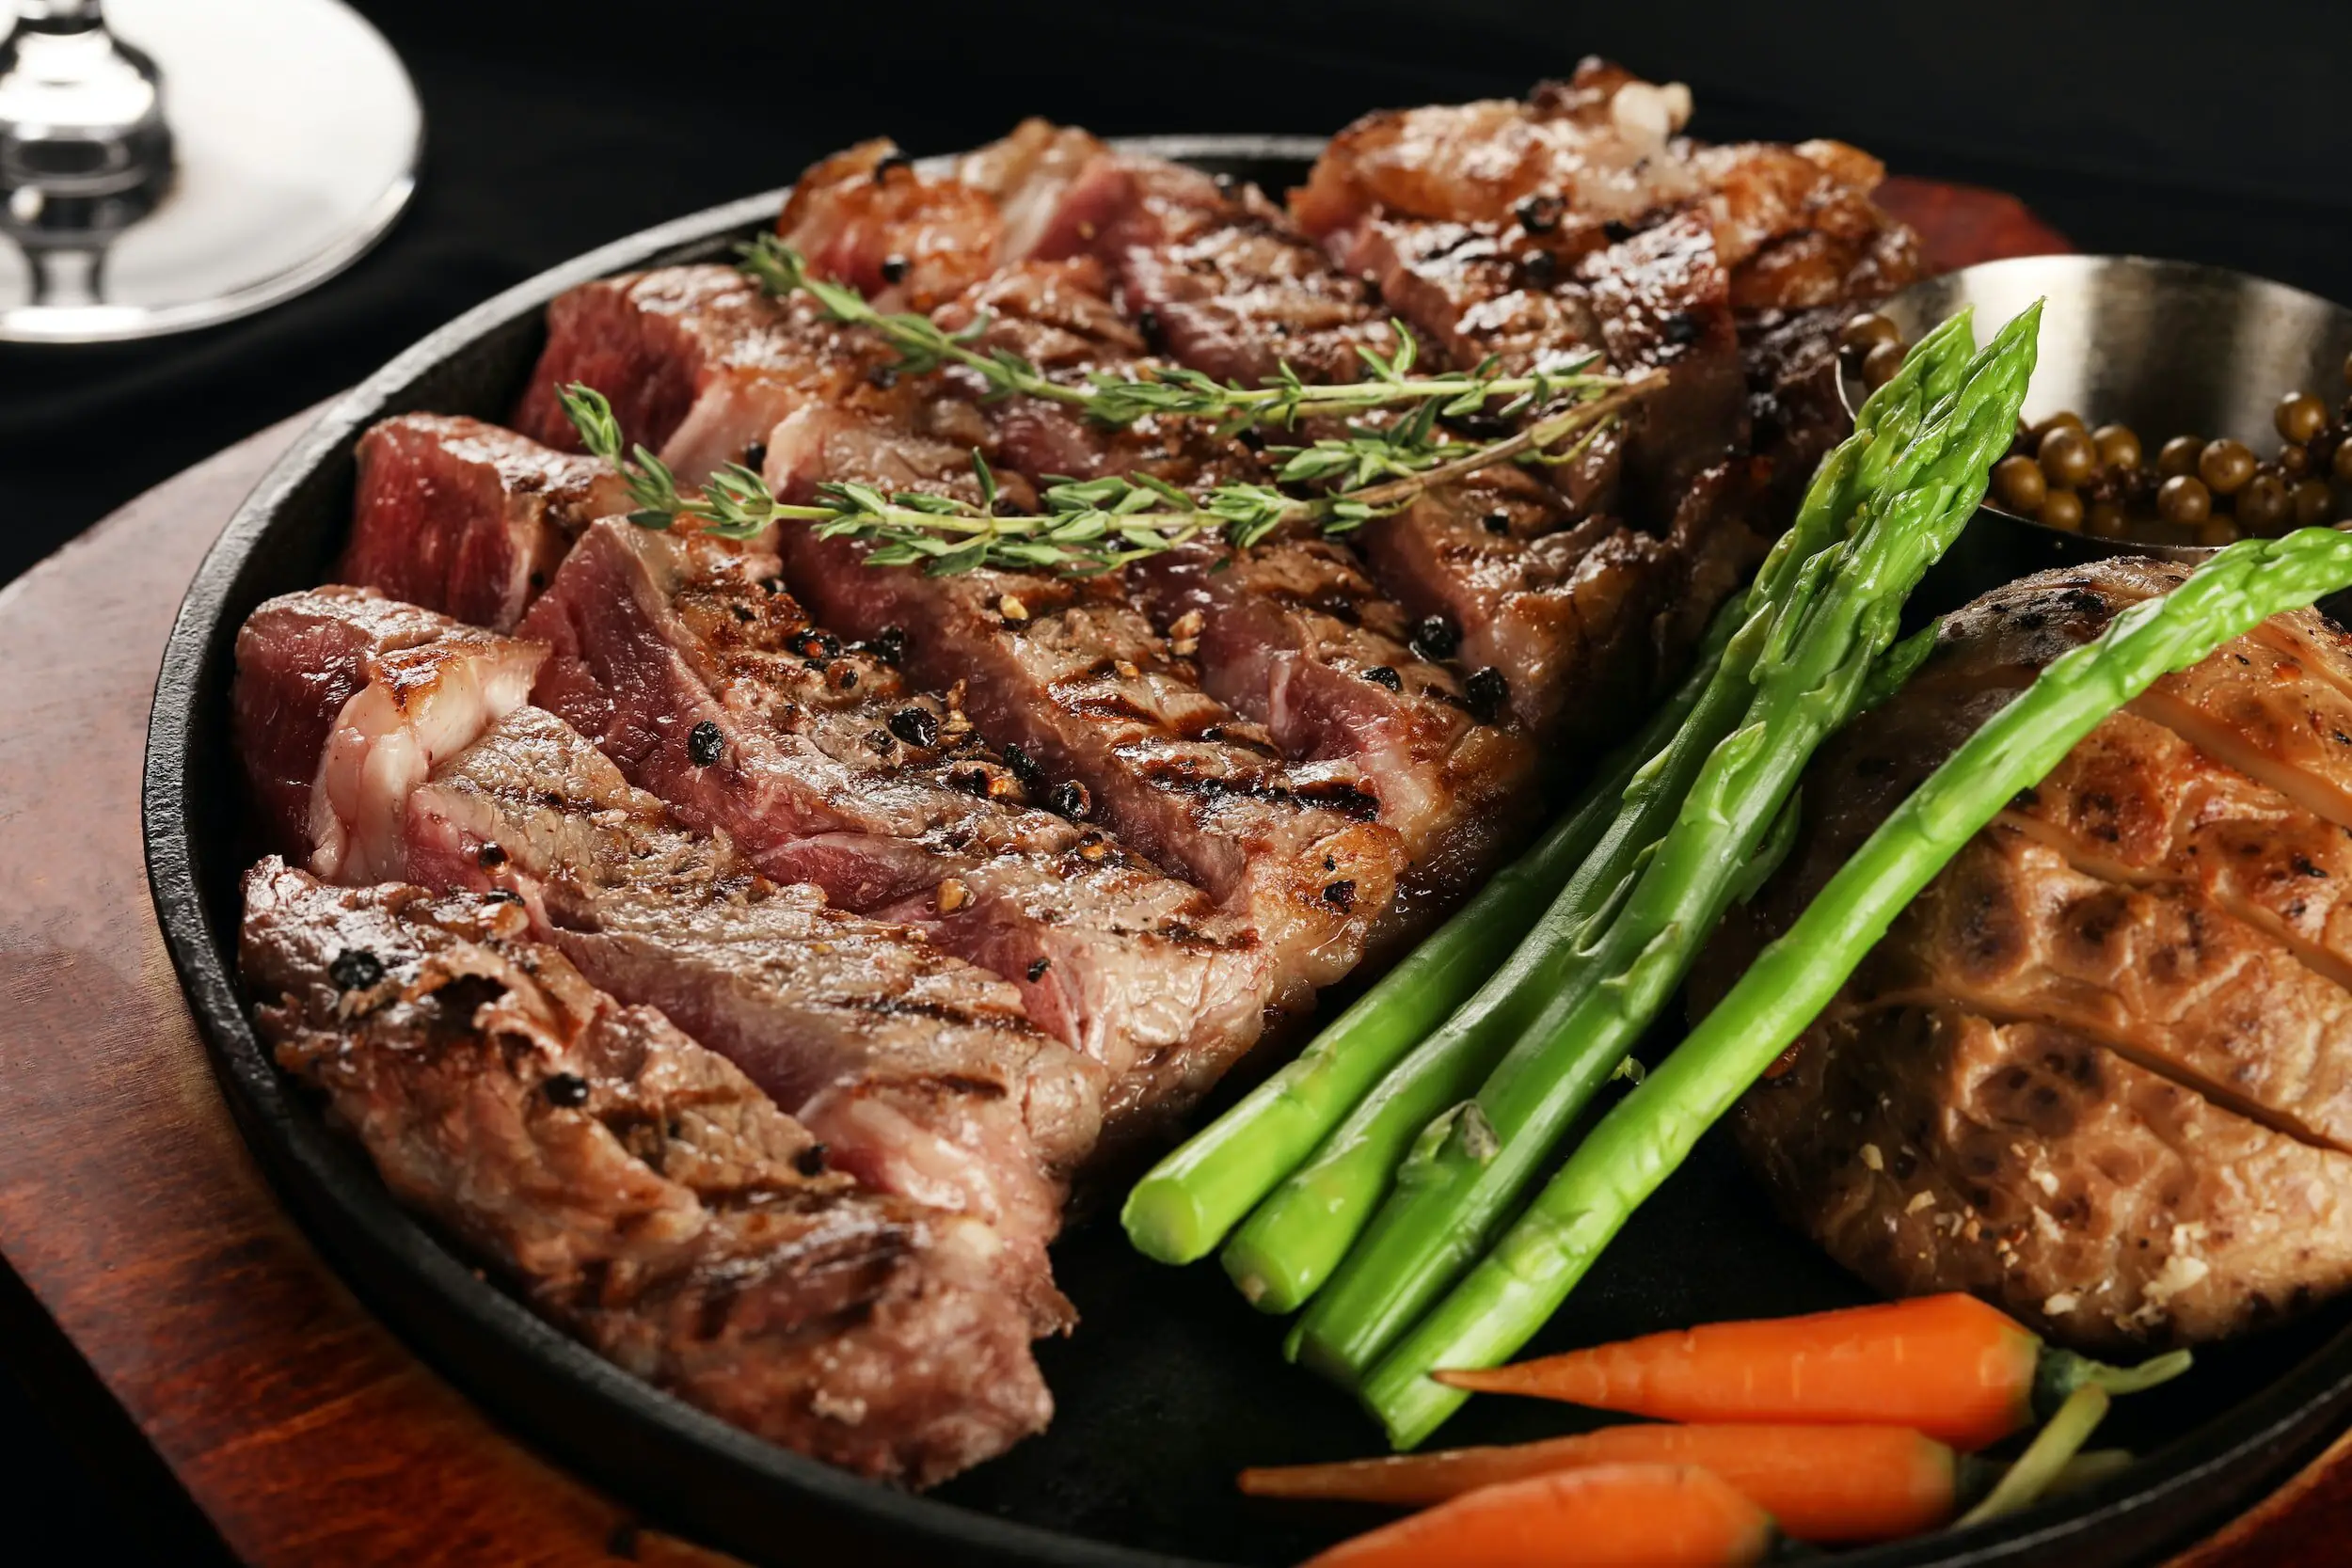 petit verdot vs shiraz pairing - steak